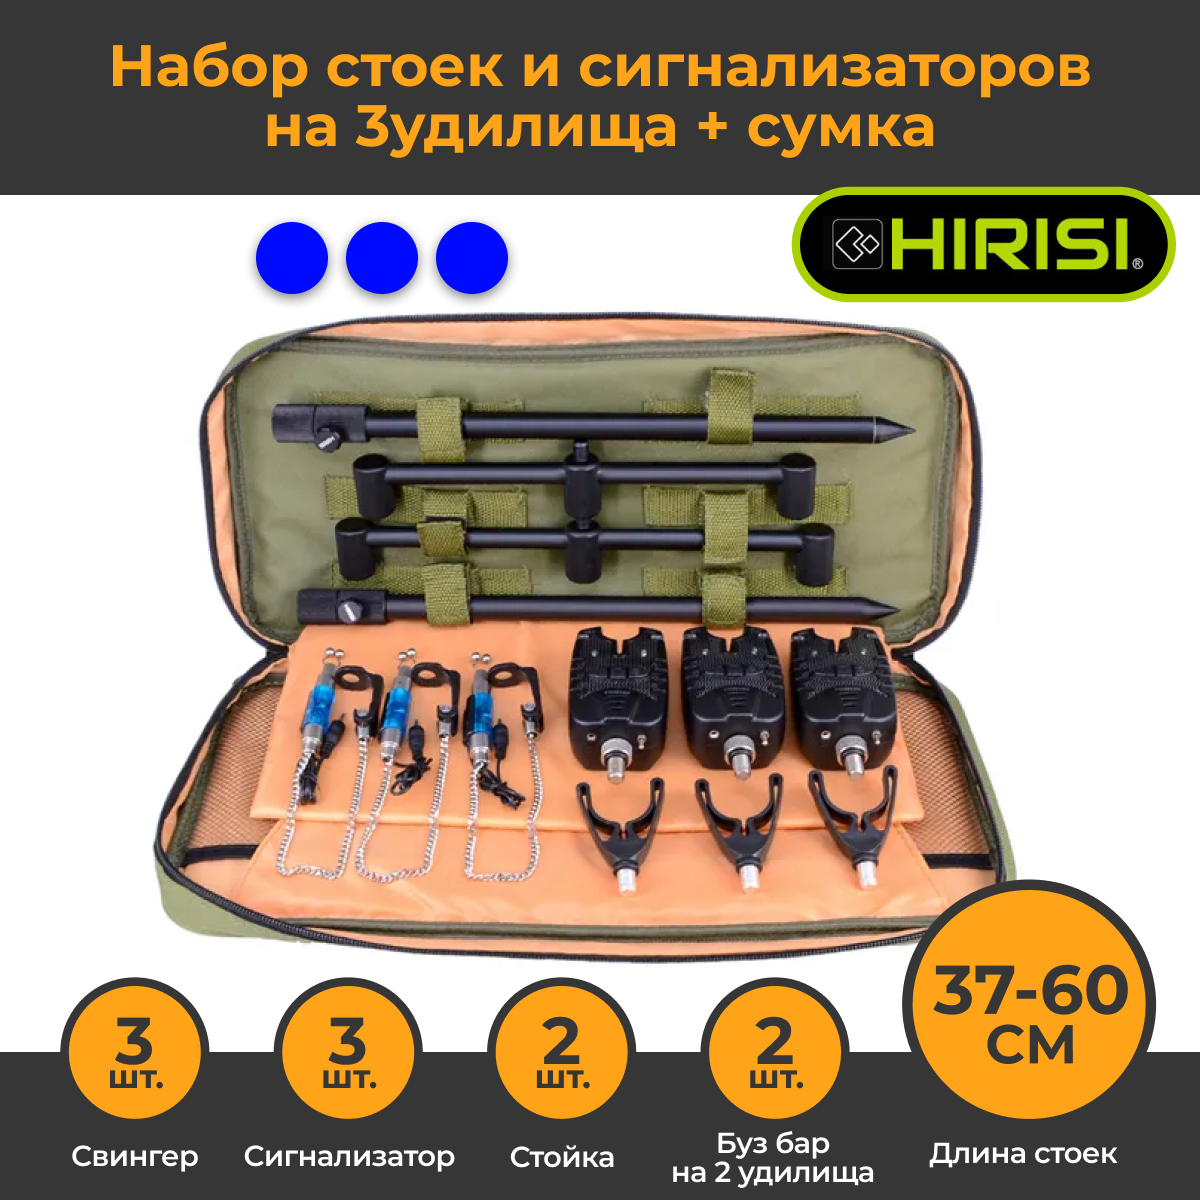 Набор стоек и сигнализаторов Hirisi 4511-3 на 3 удилища с сумкой держателями удилища Синие